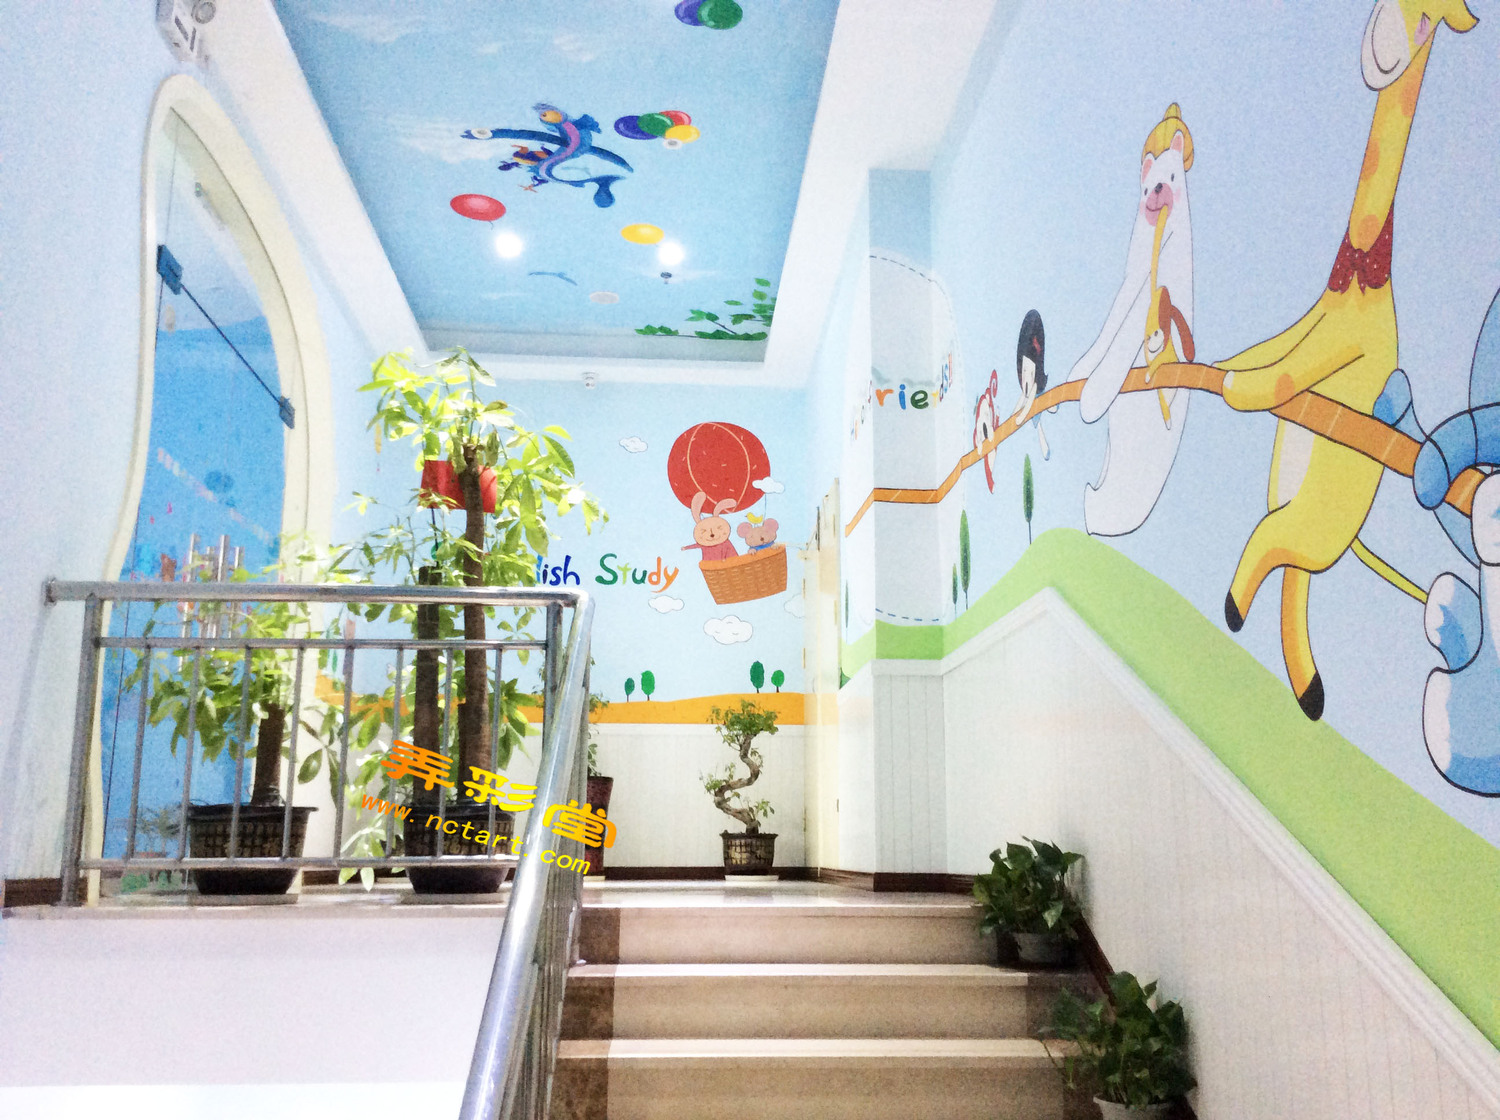 进入幼儿园需要上二楼,楼梯两边的墙绘素材跟教室的风格统一,我们用